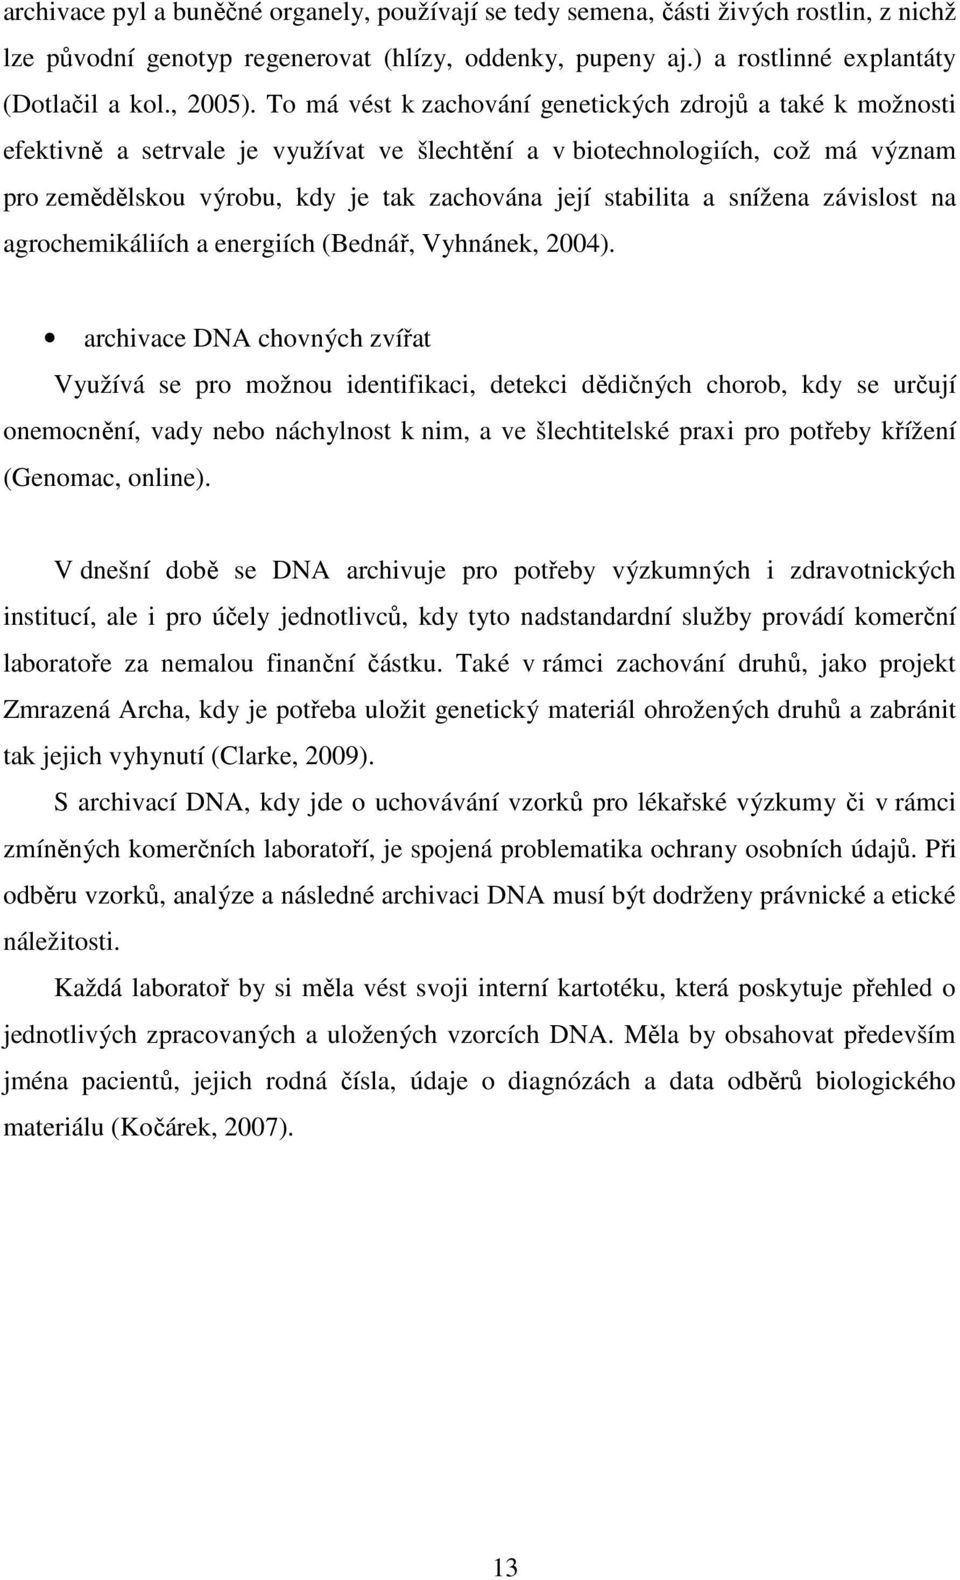 stabilita a snížena závislost na agrochemikáliích a energiích (Bednář, Vyhnánek, 2004).